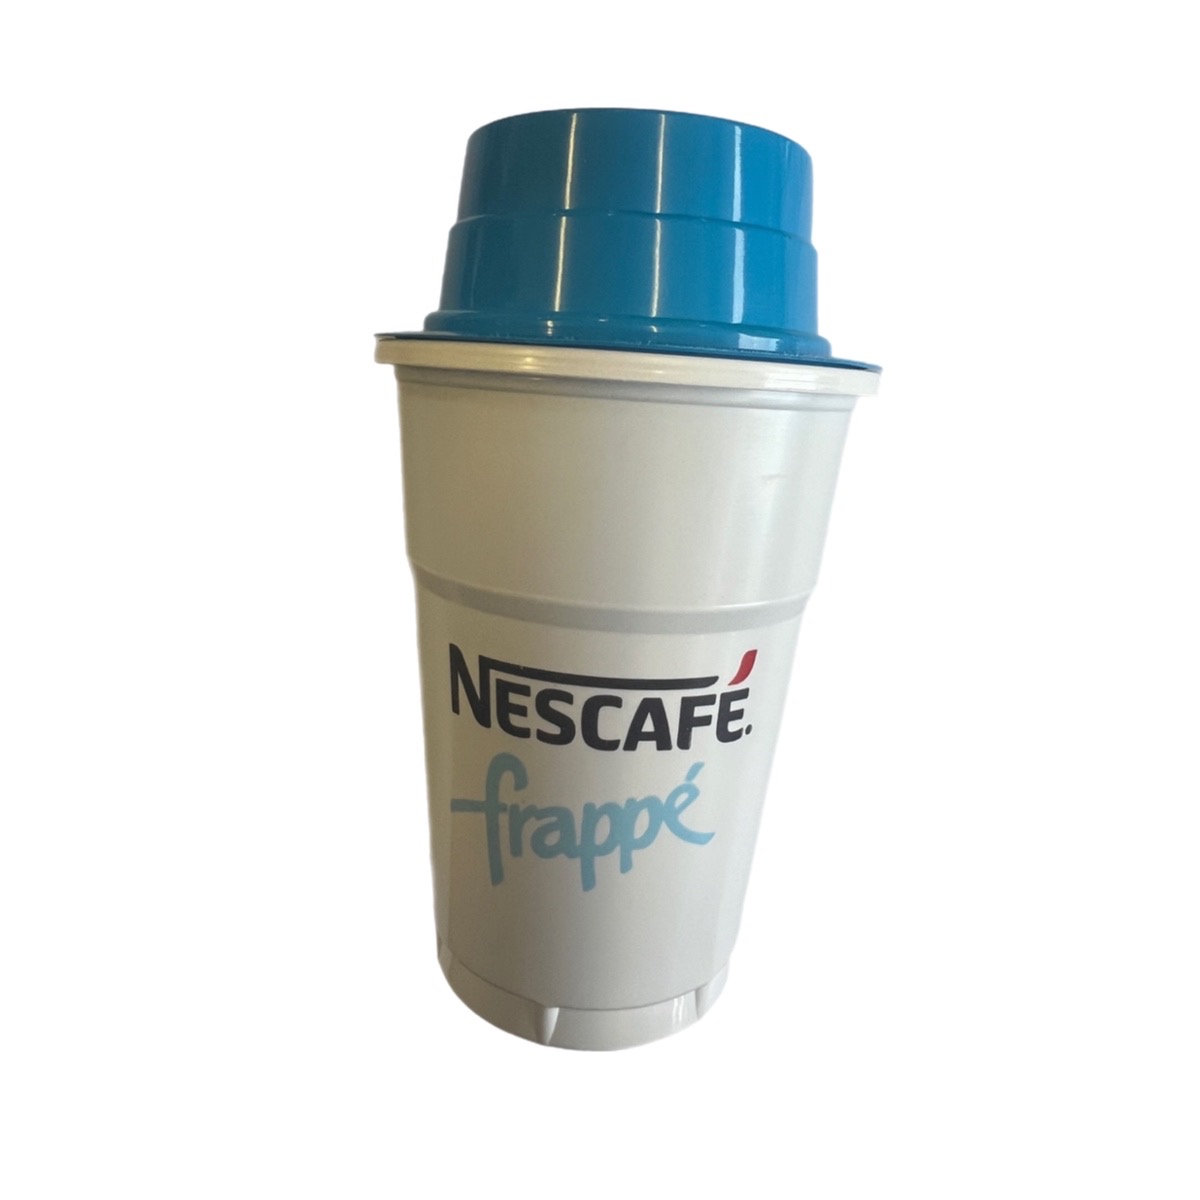 GREEK NESCAFE FRAPPE COFFEE SHAKER MAKER WITH MEASURE BLUE 500ml